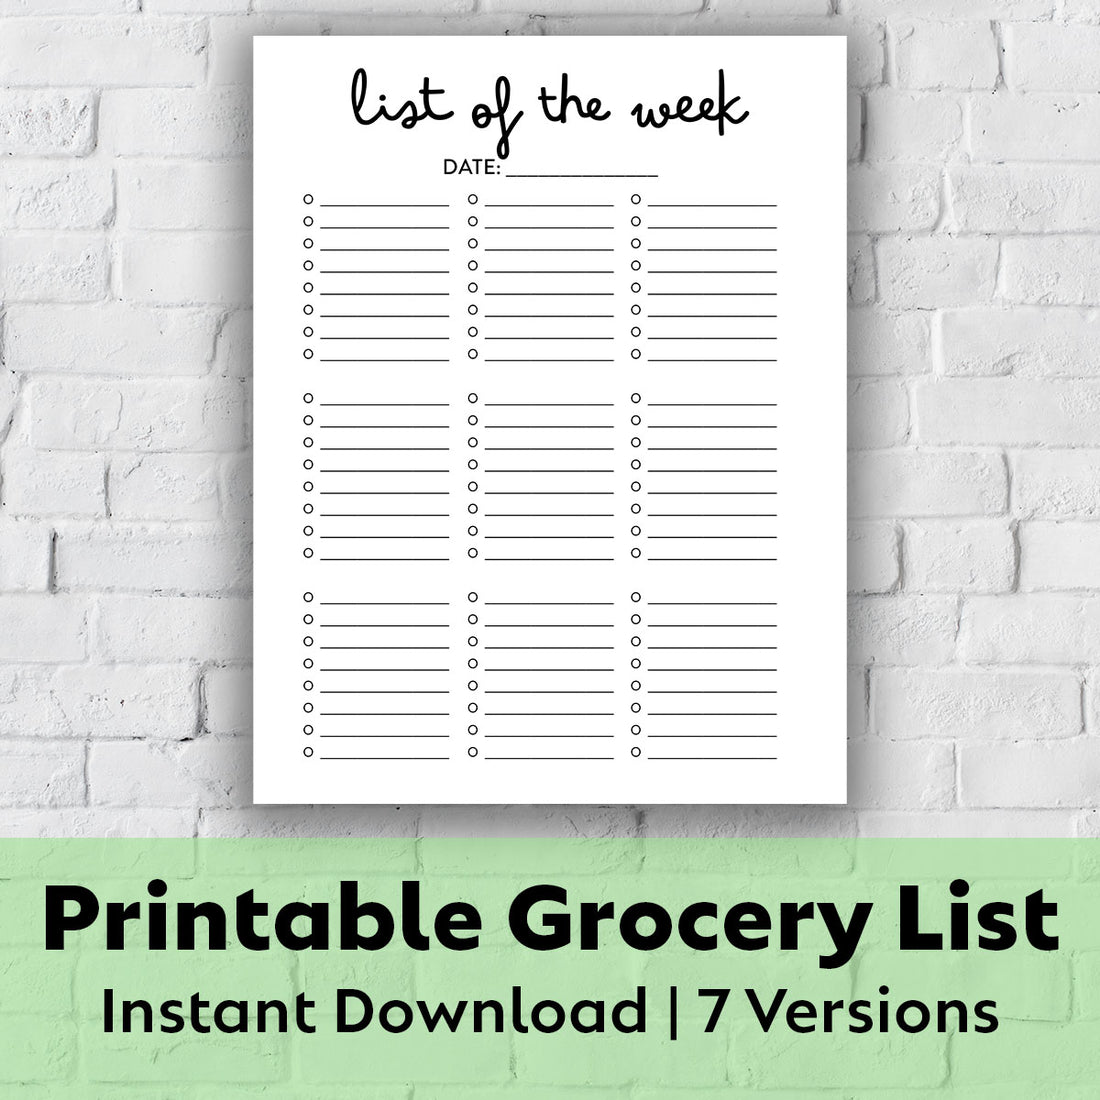 Printable Grocery List - List of the Week